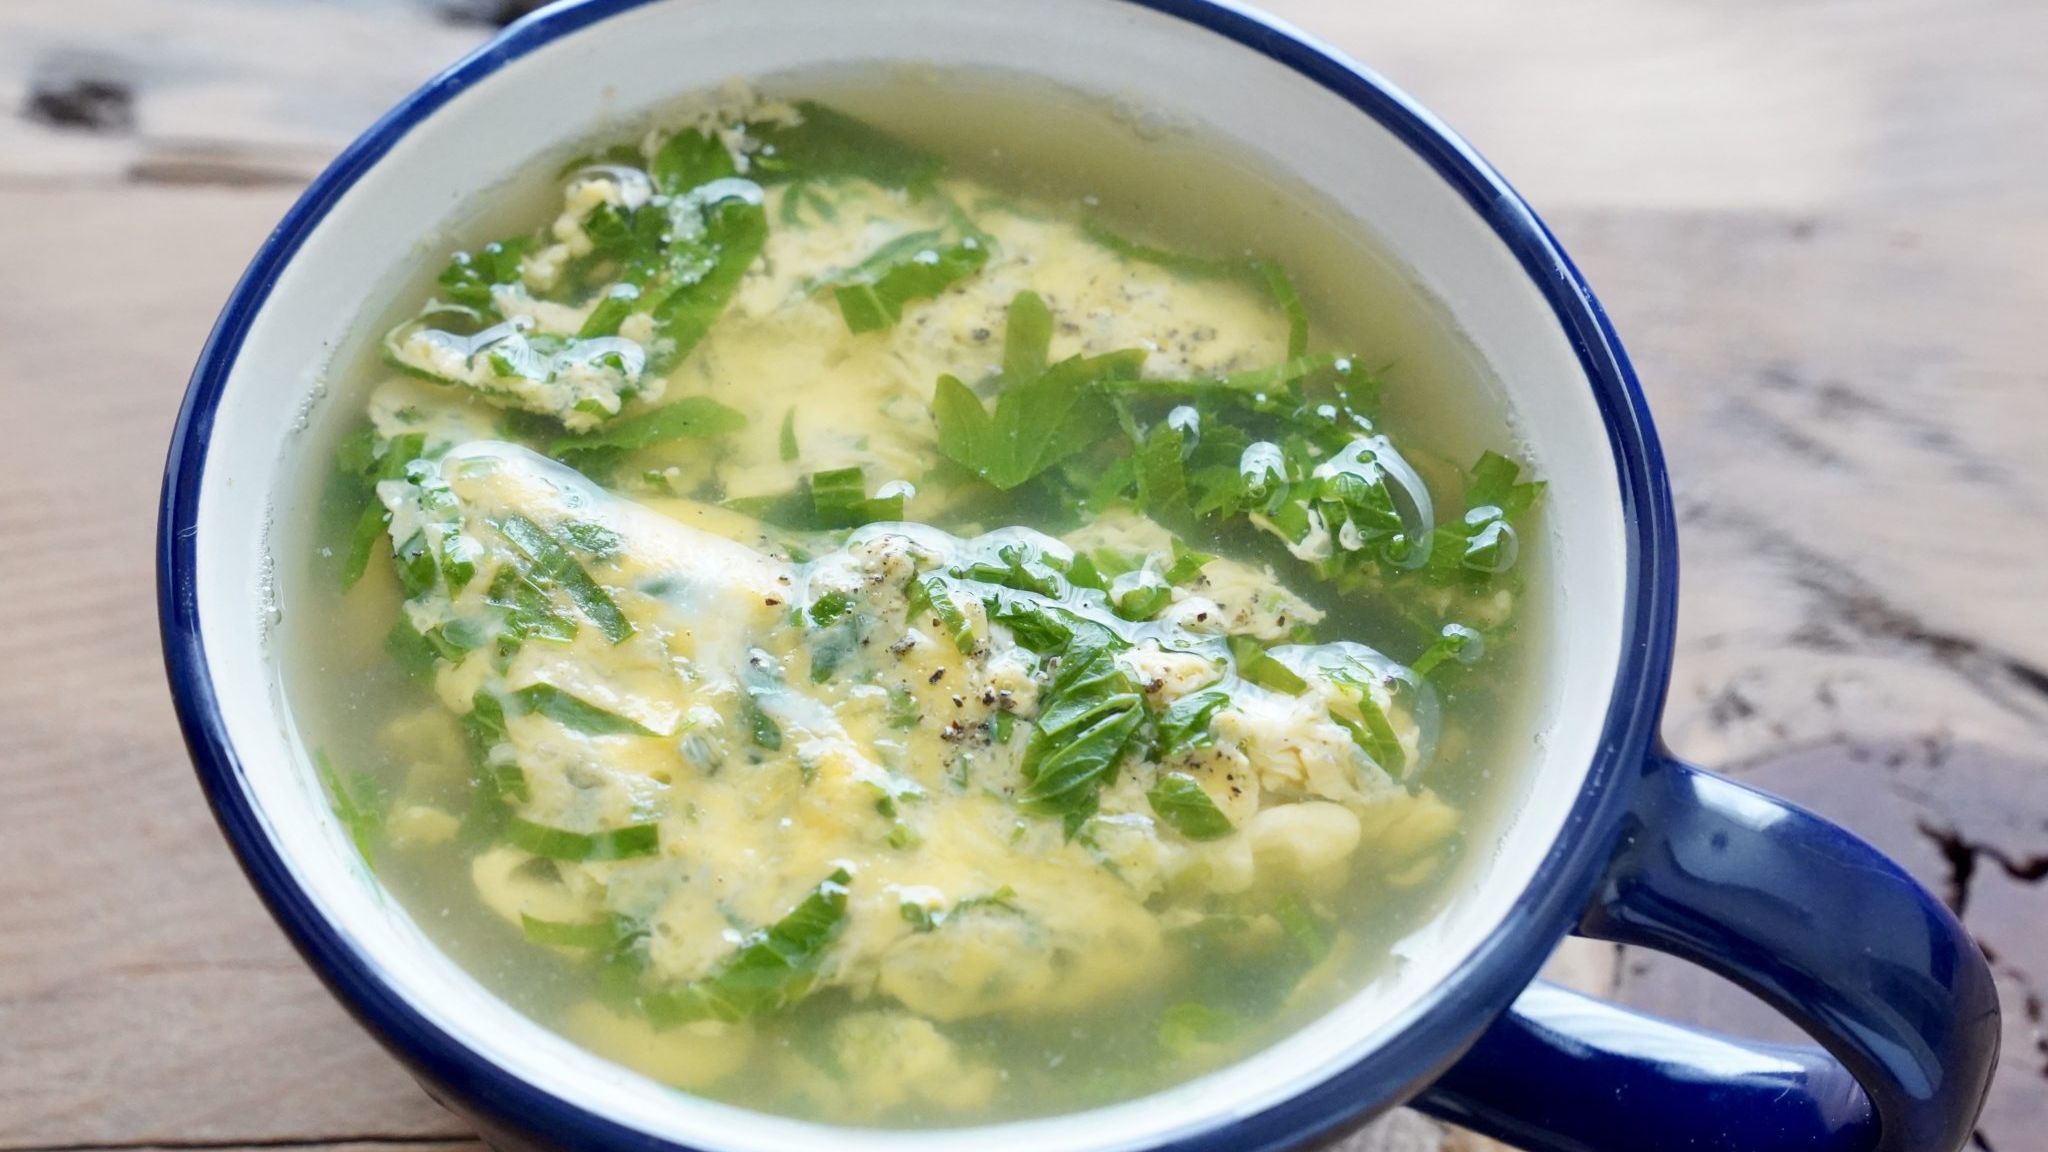 セロリの葉のレシピ 洋風スープが旨い 溶き卵を使った簡単な作り方 やまでら くみこ のレシピ